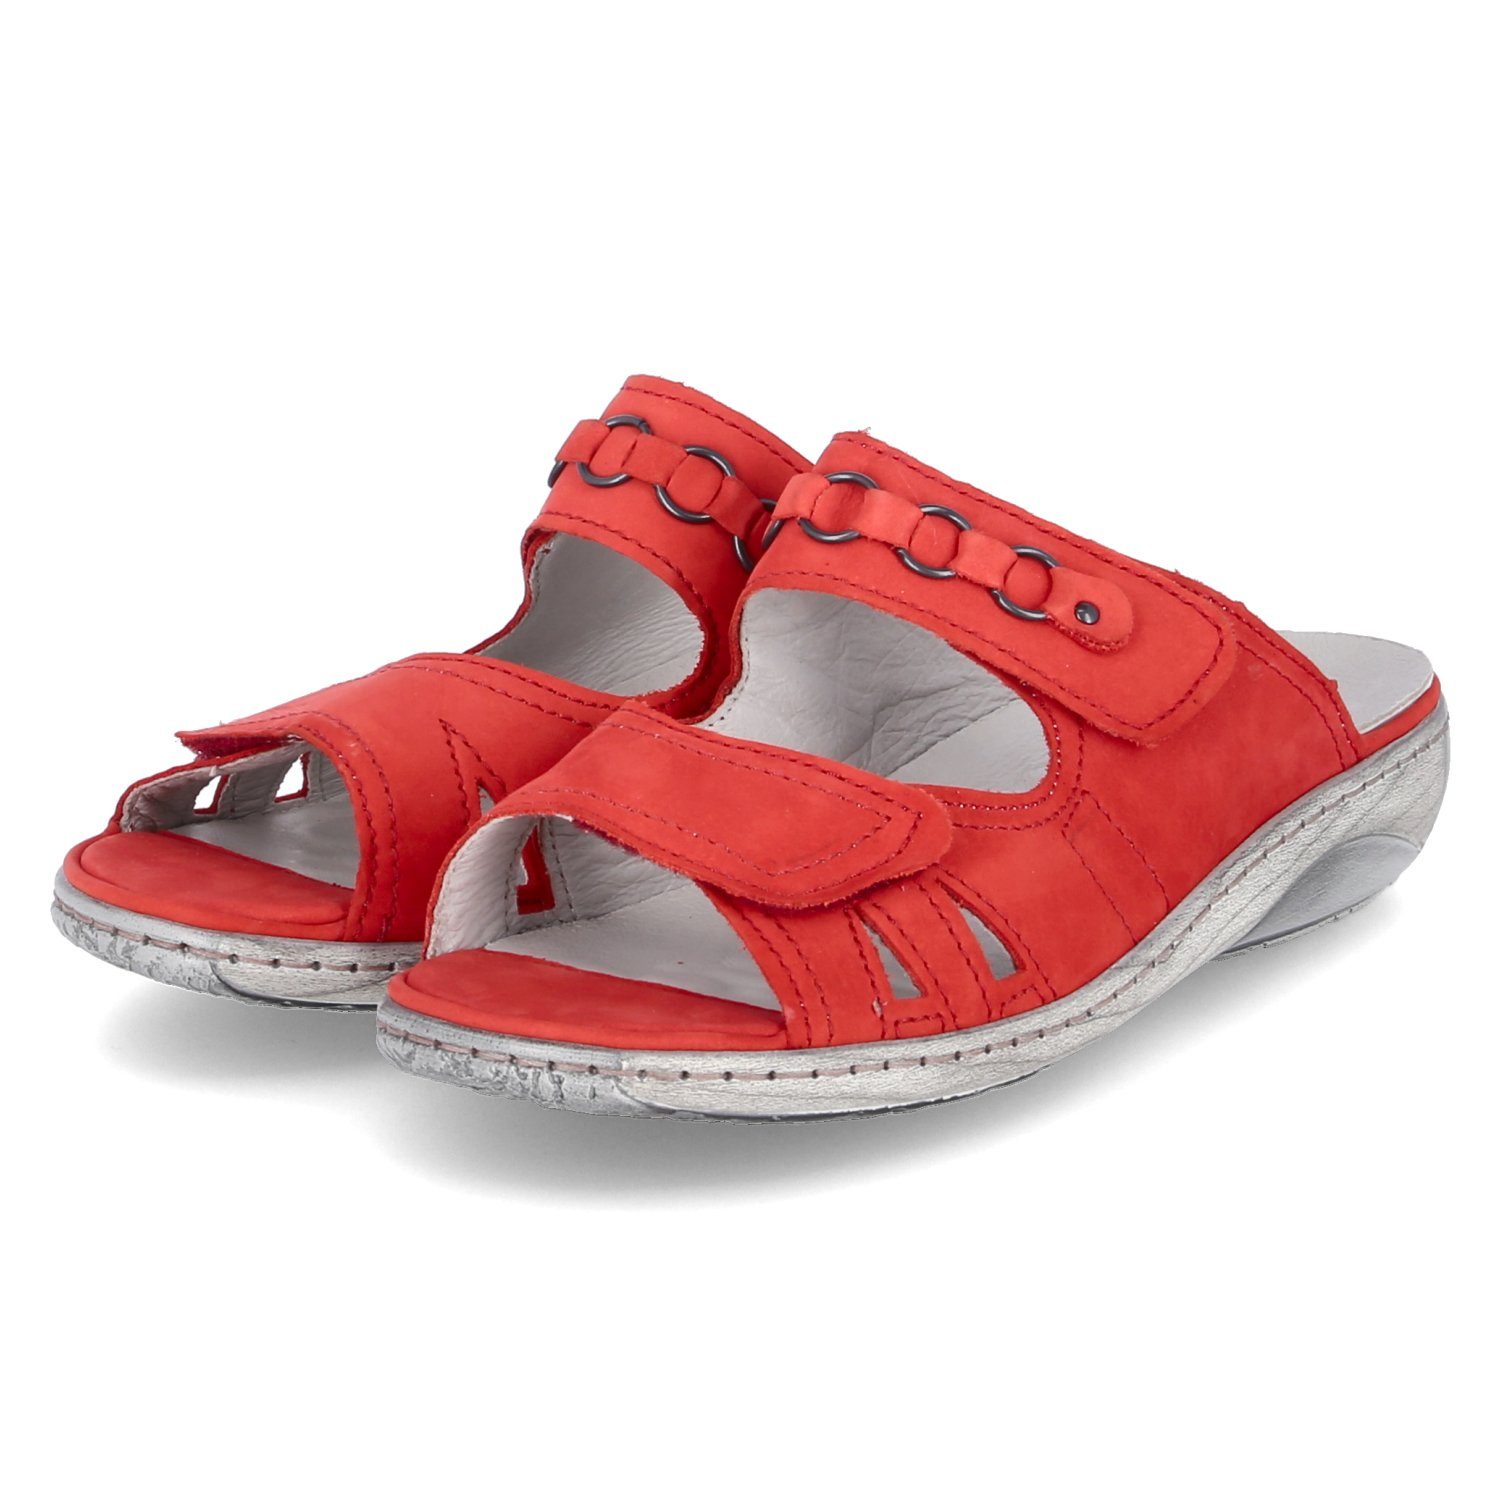 Waldläufer Sandalen für Damen online kaufen | OTTO